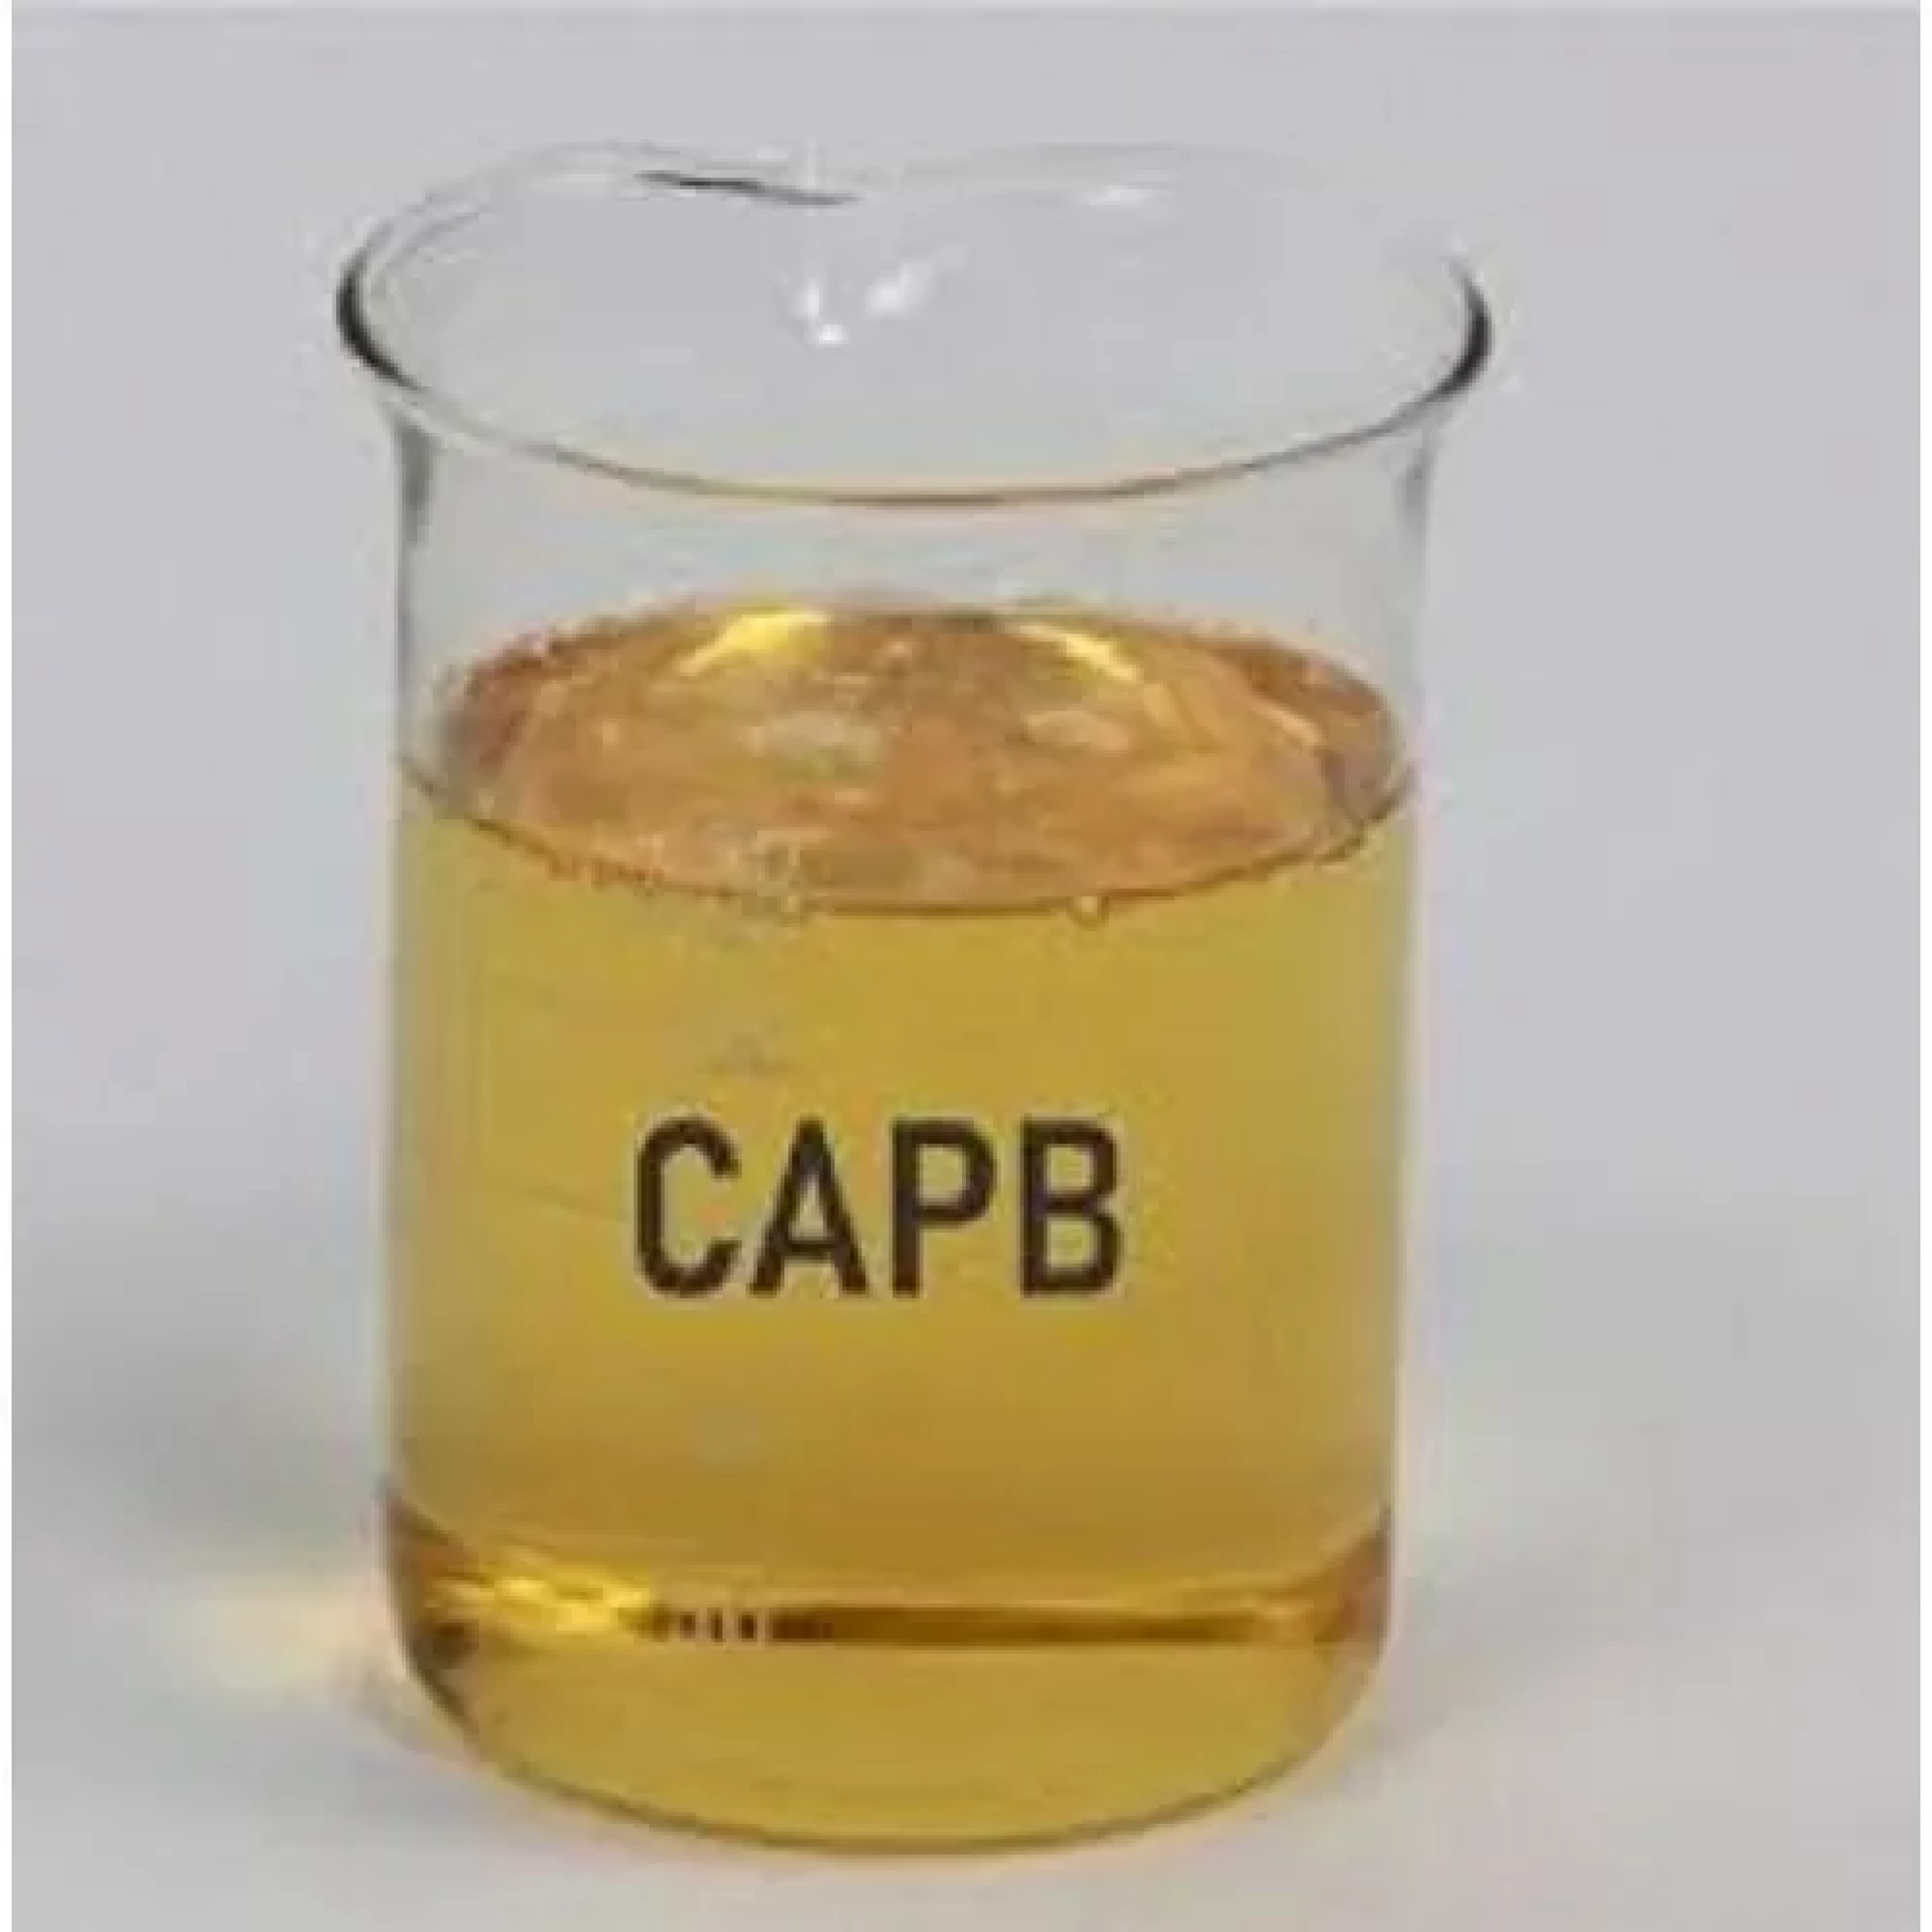 Cocamido propyl Betaine (CAPB)